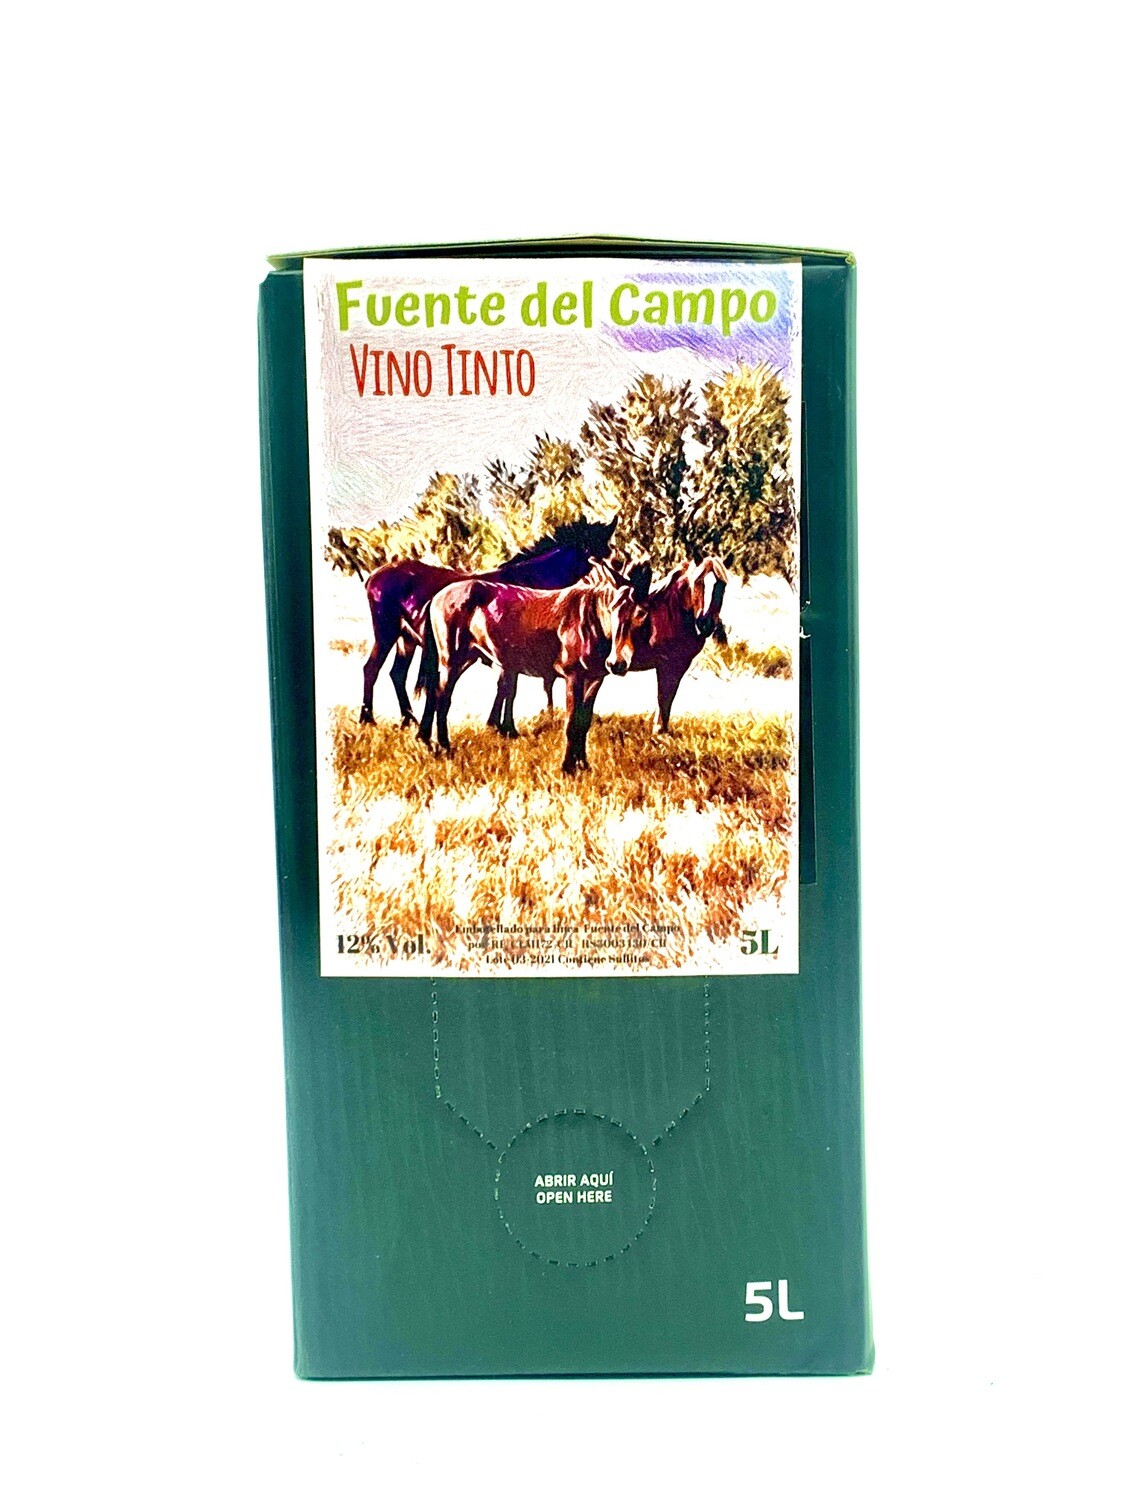 Fuente del Campo BAG IN BOX 5 LITROS Tinto Tempranillo